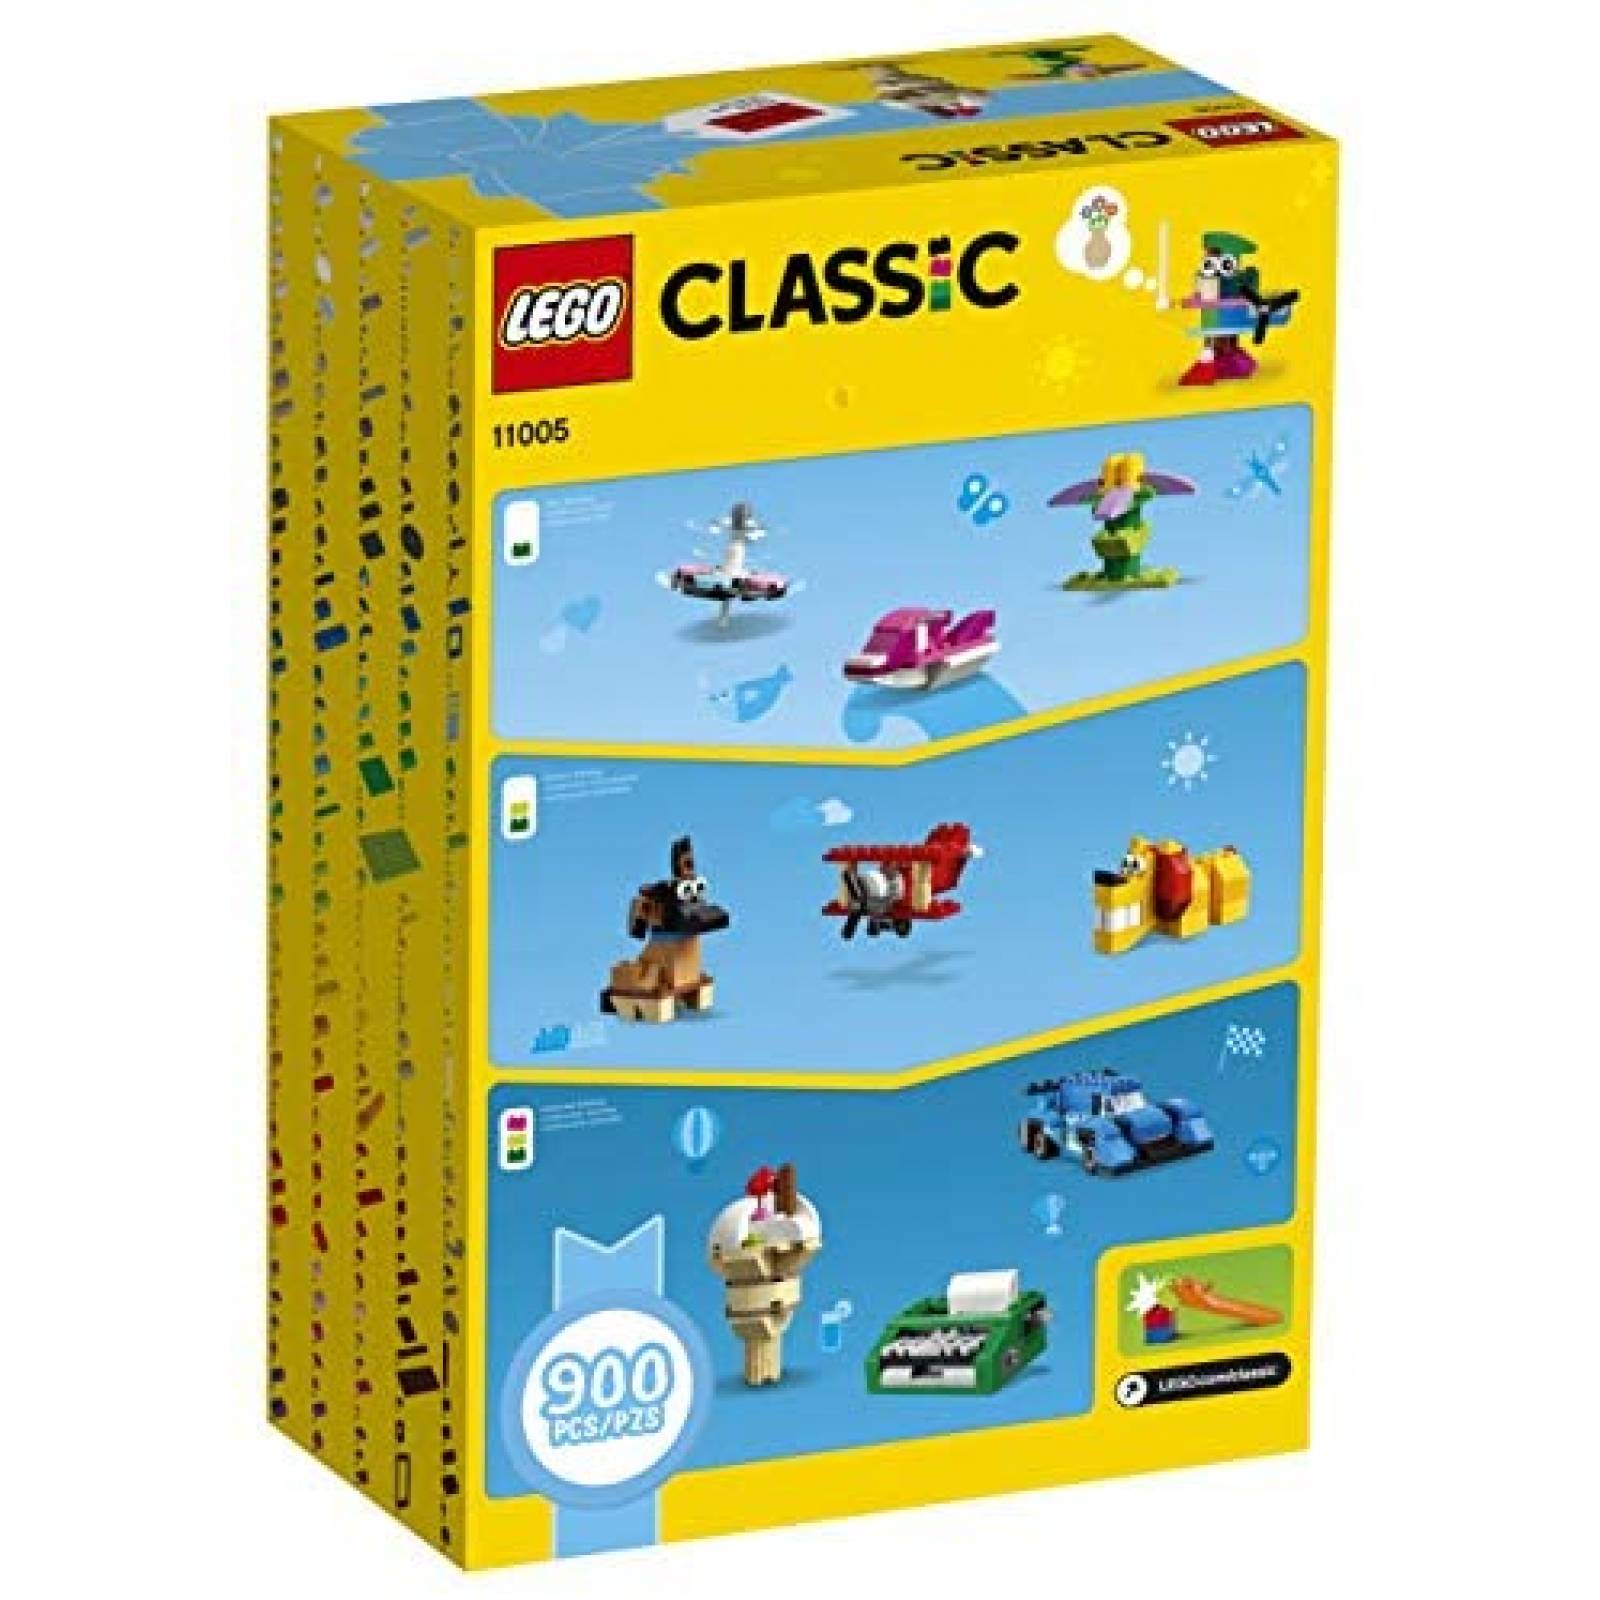 Juguete Armable LEGO 3 Niveles 900 Piezas para Niños